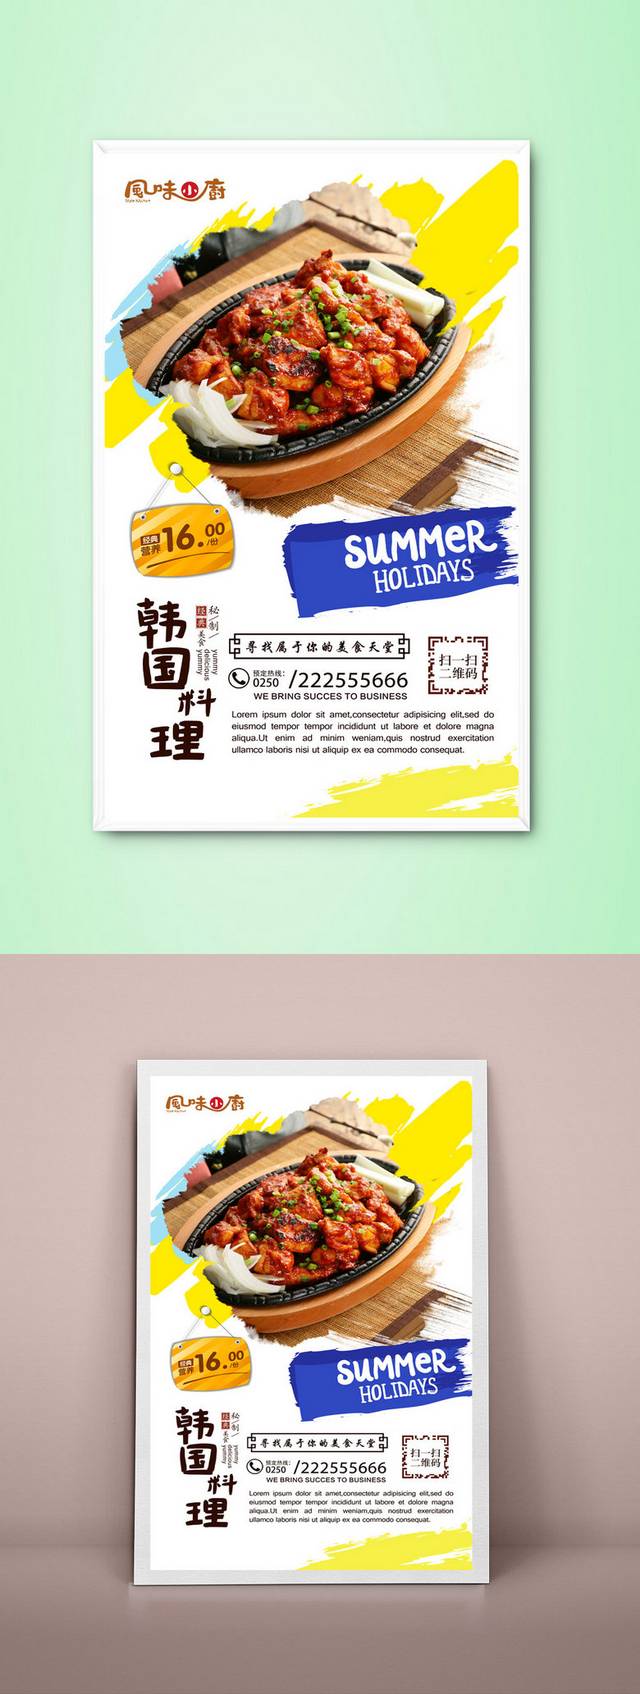 高档韩国料理宣传海报设计